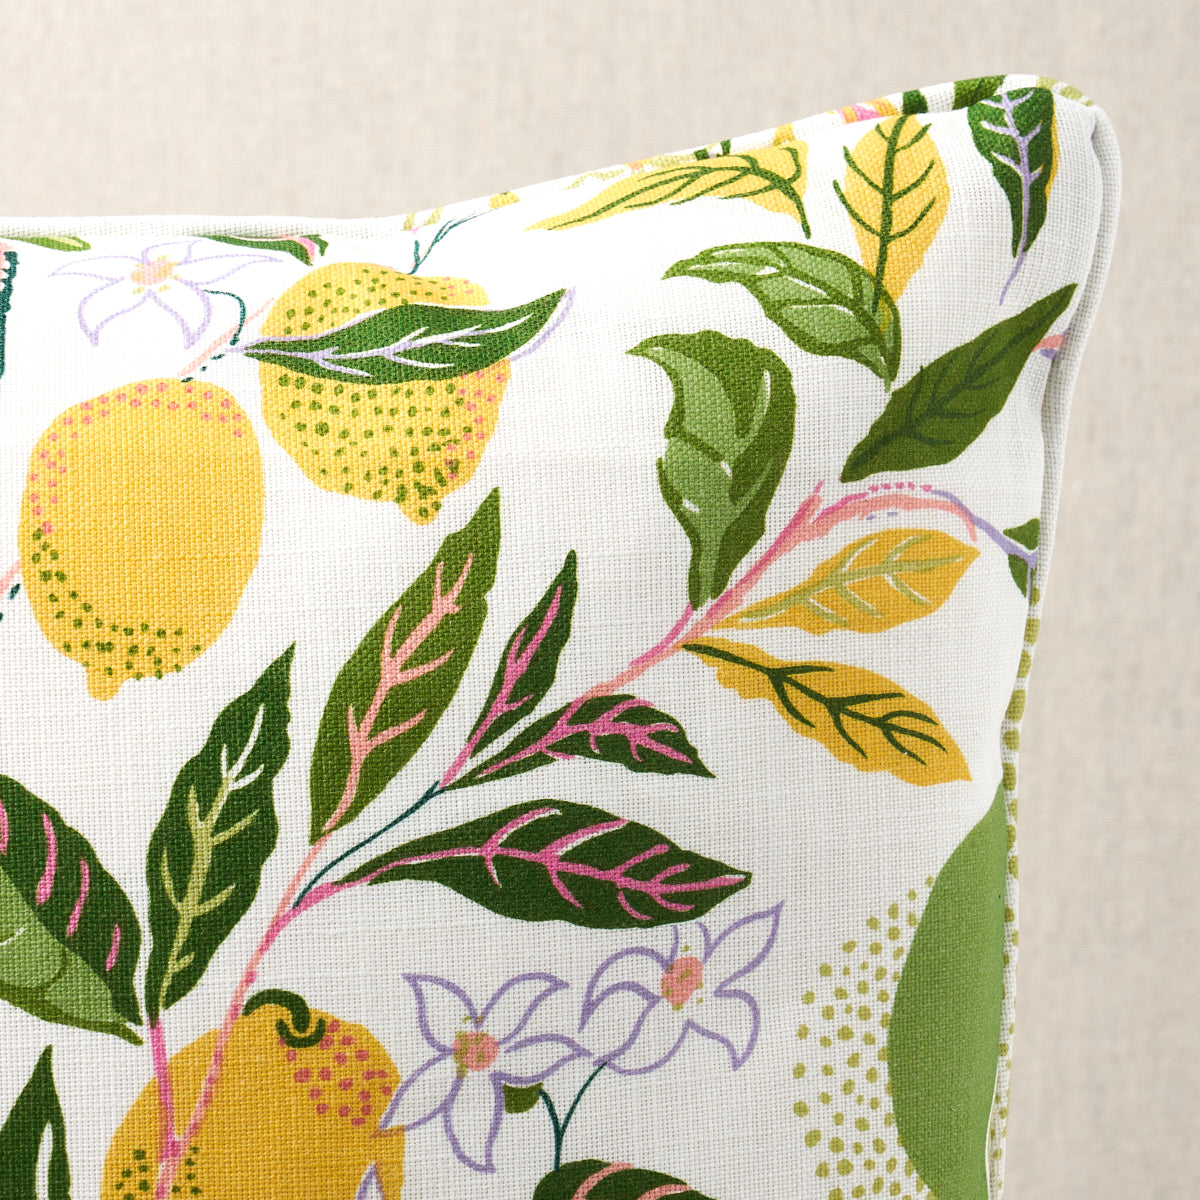 Citrus Garden Indoor/Outdoor Pillow | Garden